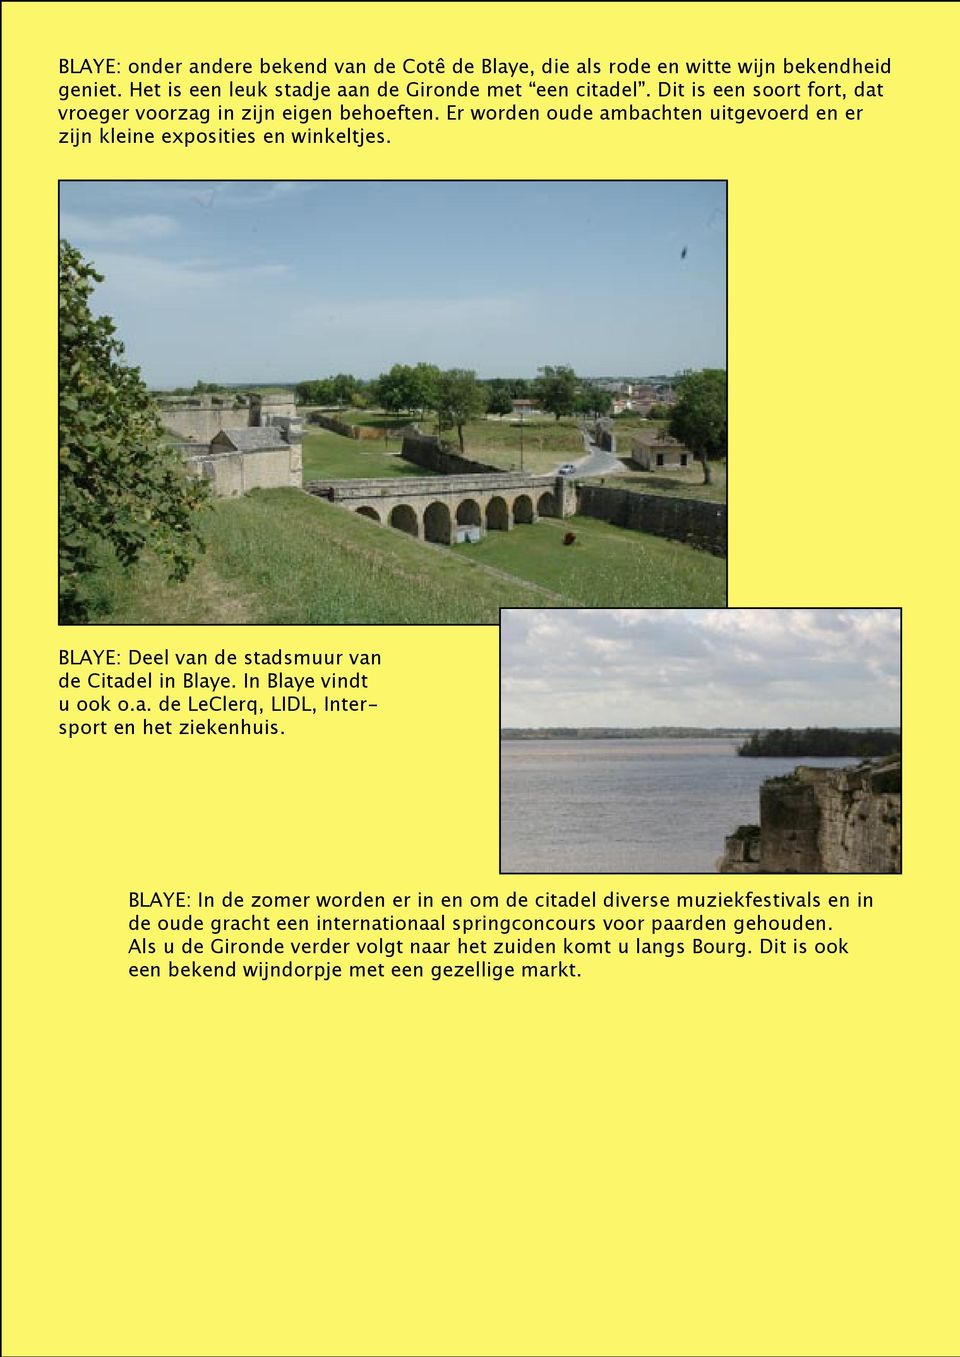 BLAYE: Deel van de stadsmuur van de Citadel in Blaye. In Blaye vindt u ook o.a. de LeClerq, LIDL, Intersport en het ziekenhuis.